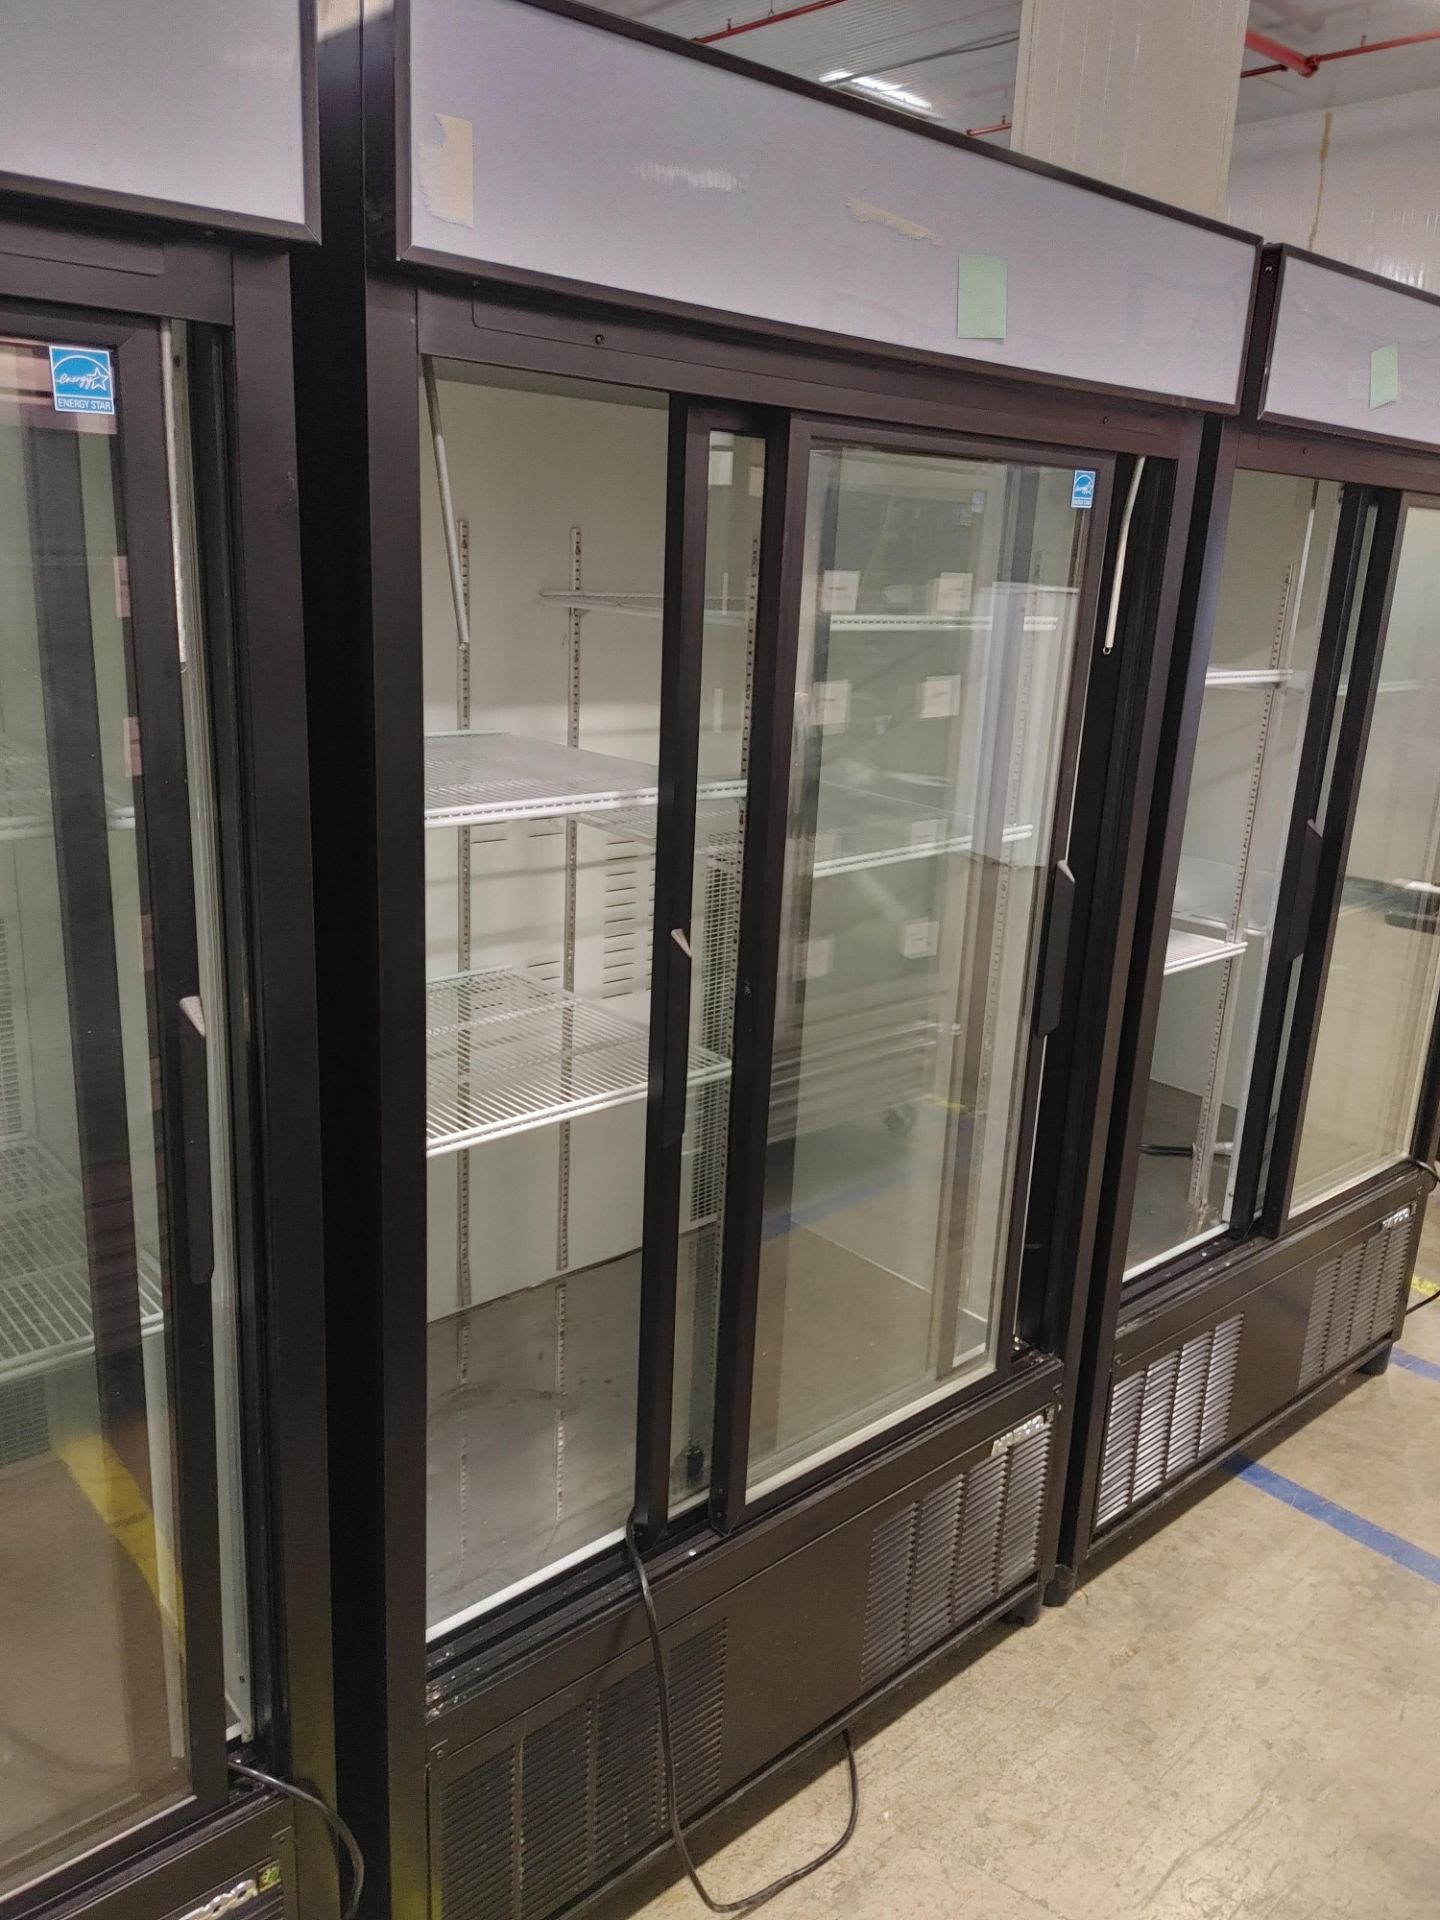 Habco "ESM42HC" 2 Door Glass Front Refrigerator S/N 42066184